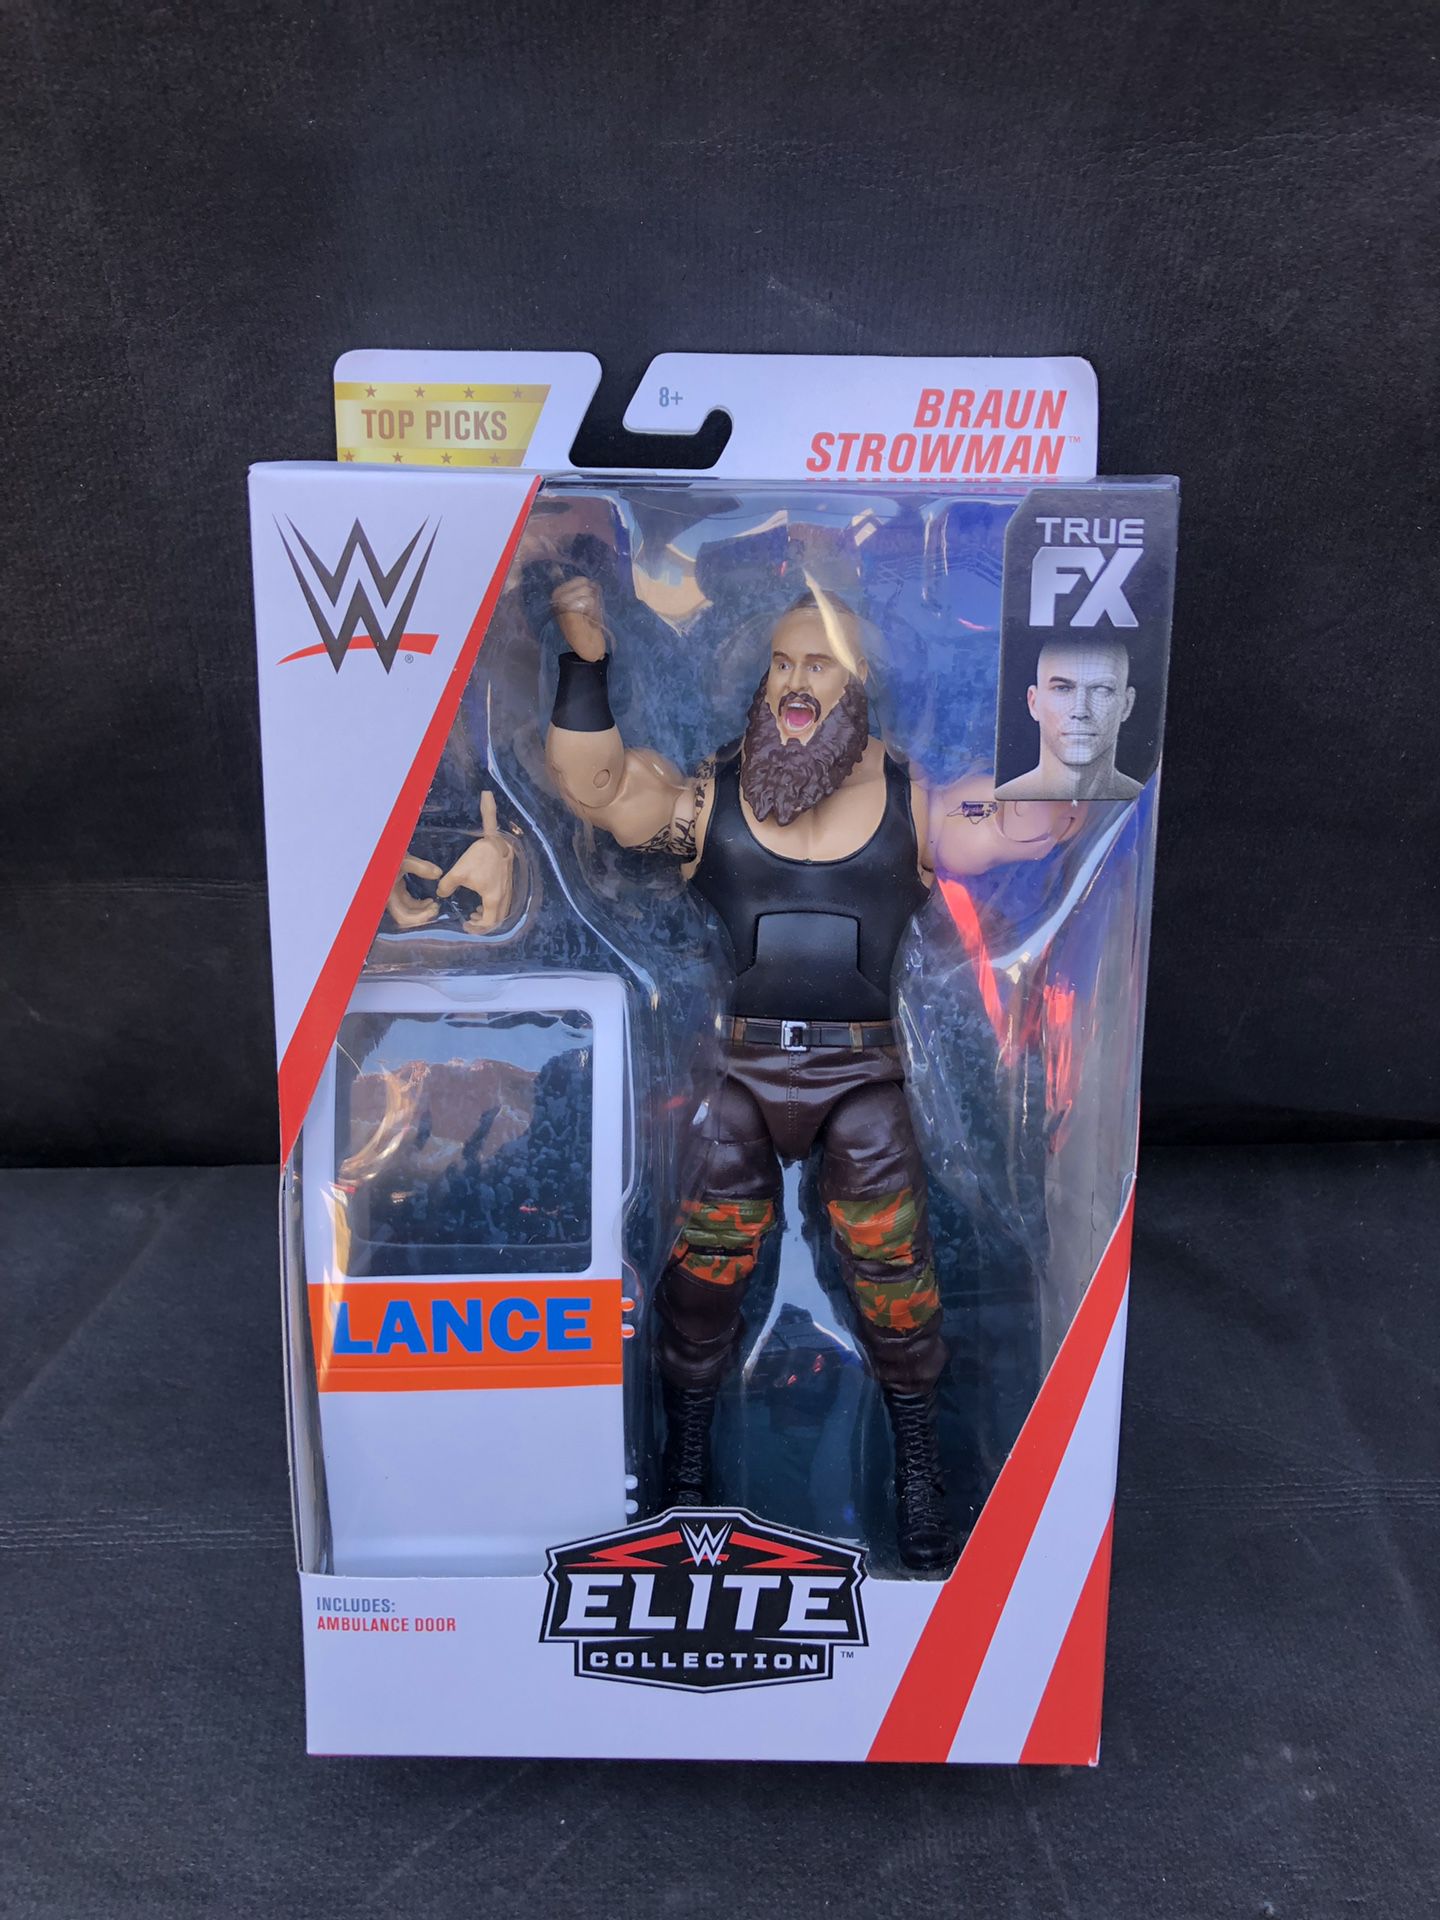 WWE elite collection action figure Braun Strowman